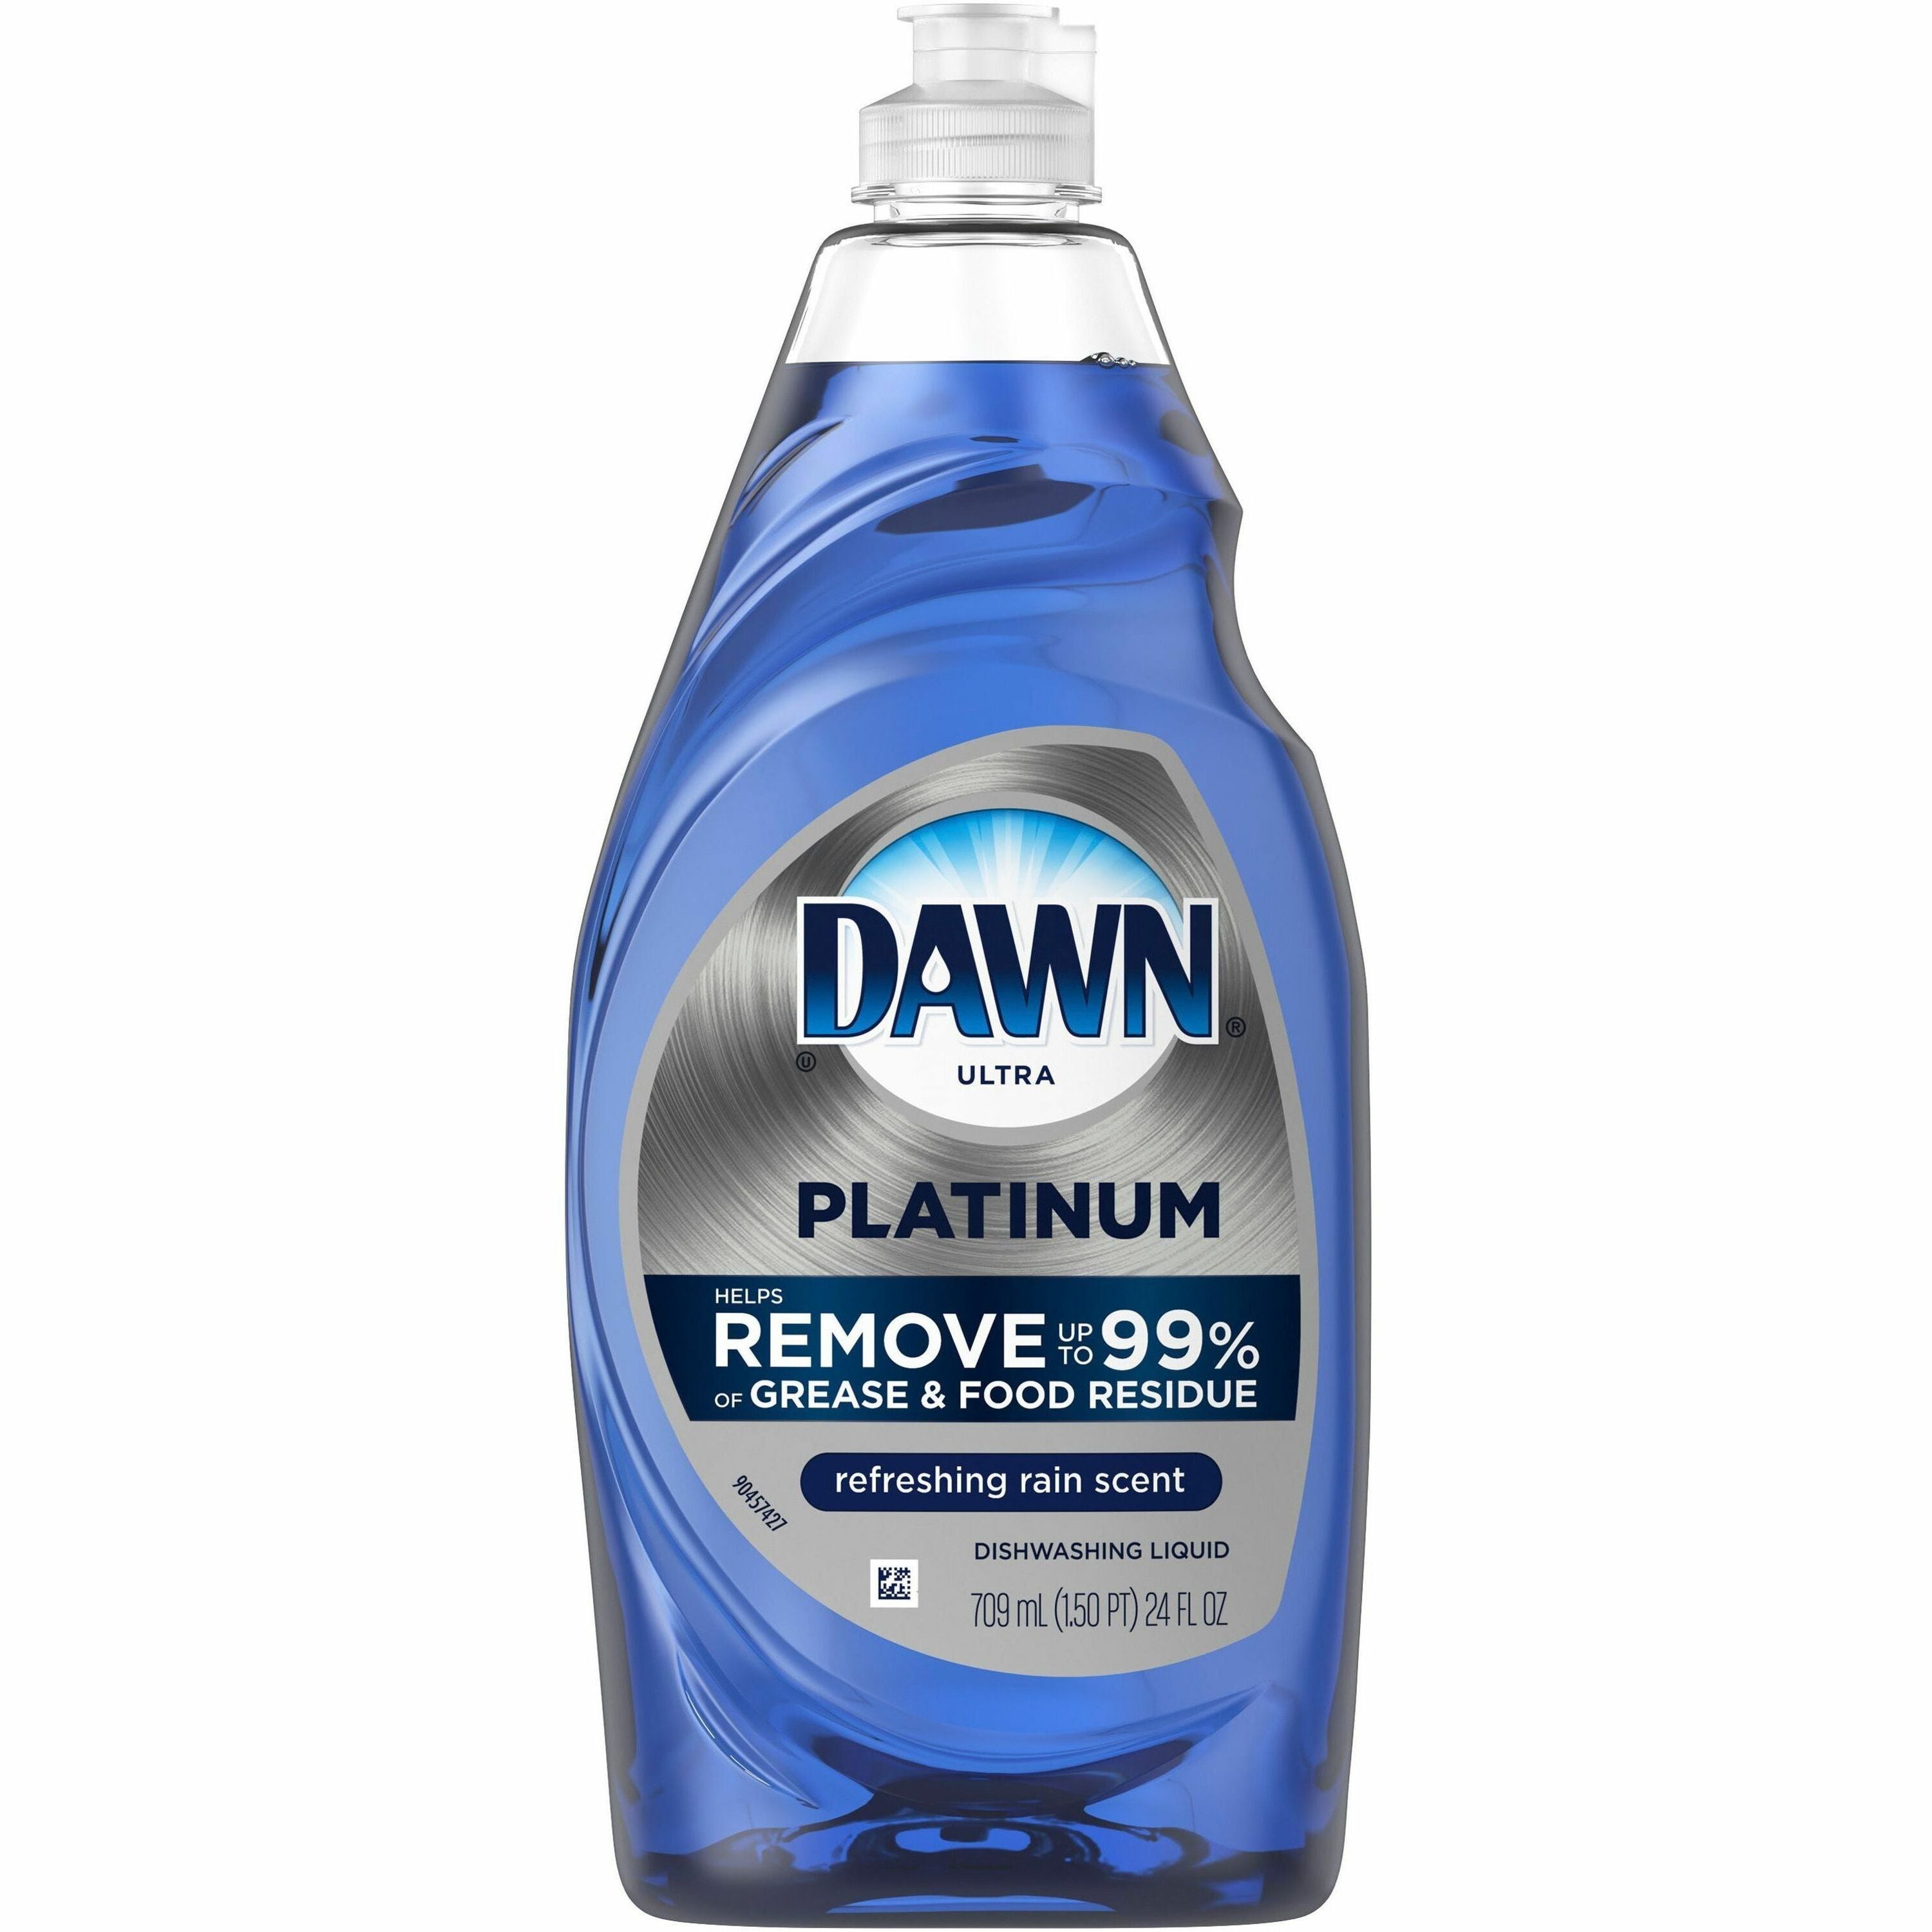 Dawn Platinum Dishwashing Soap - 24 fl oz (0.8 quart) - 1 Each - Blue - 1